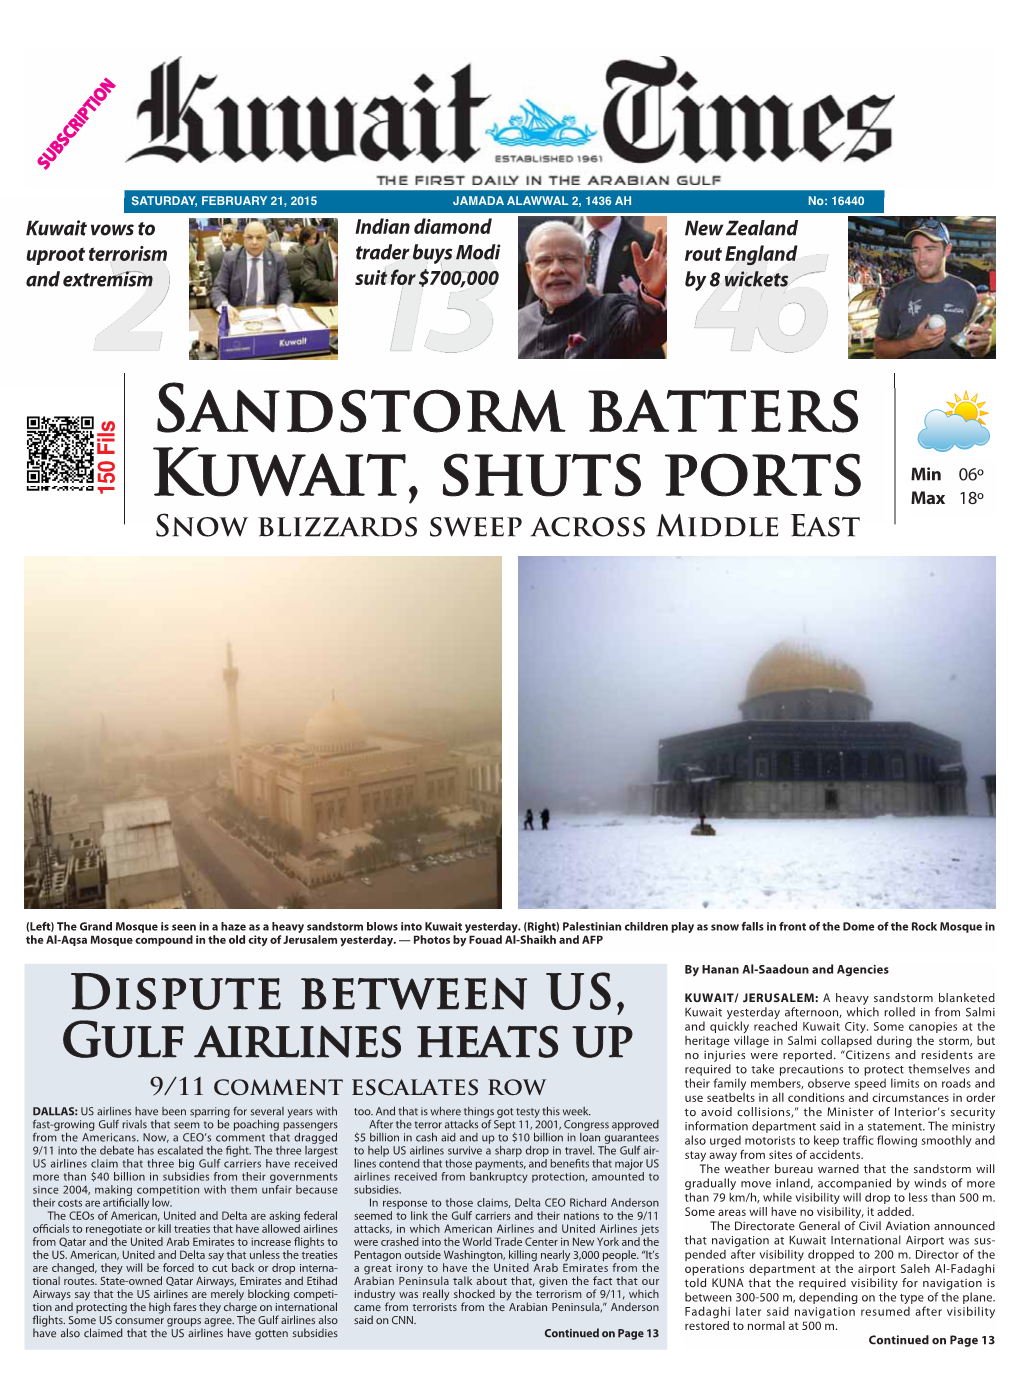 Sandstorm Batters Kuwait, Shuts Ports Dispute Between US